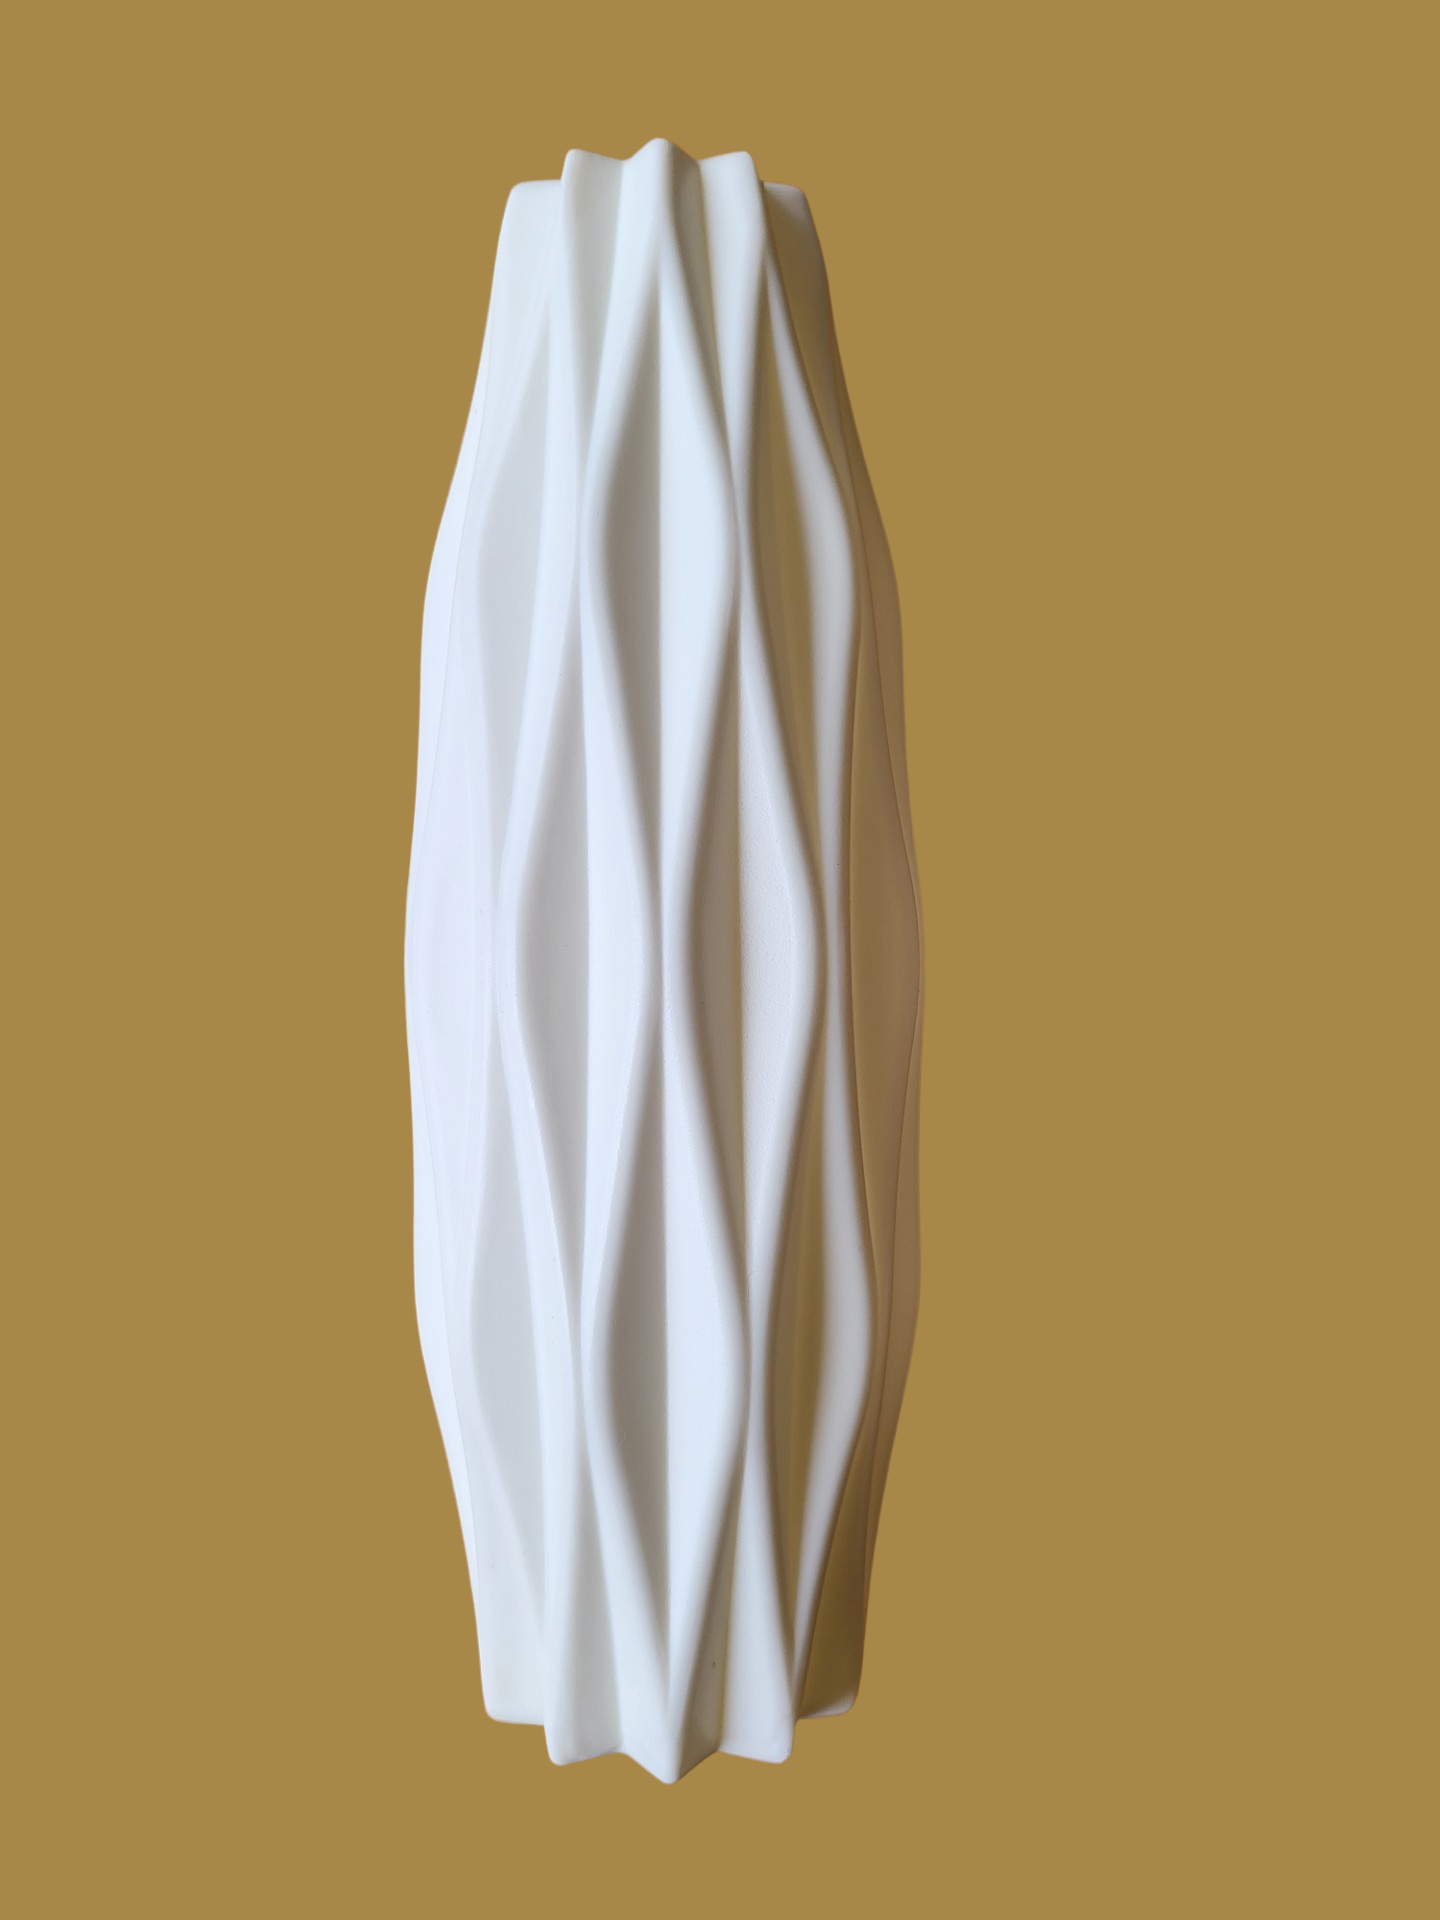 Deko Vase creme-weiß Kunststoff